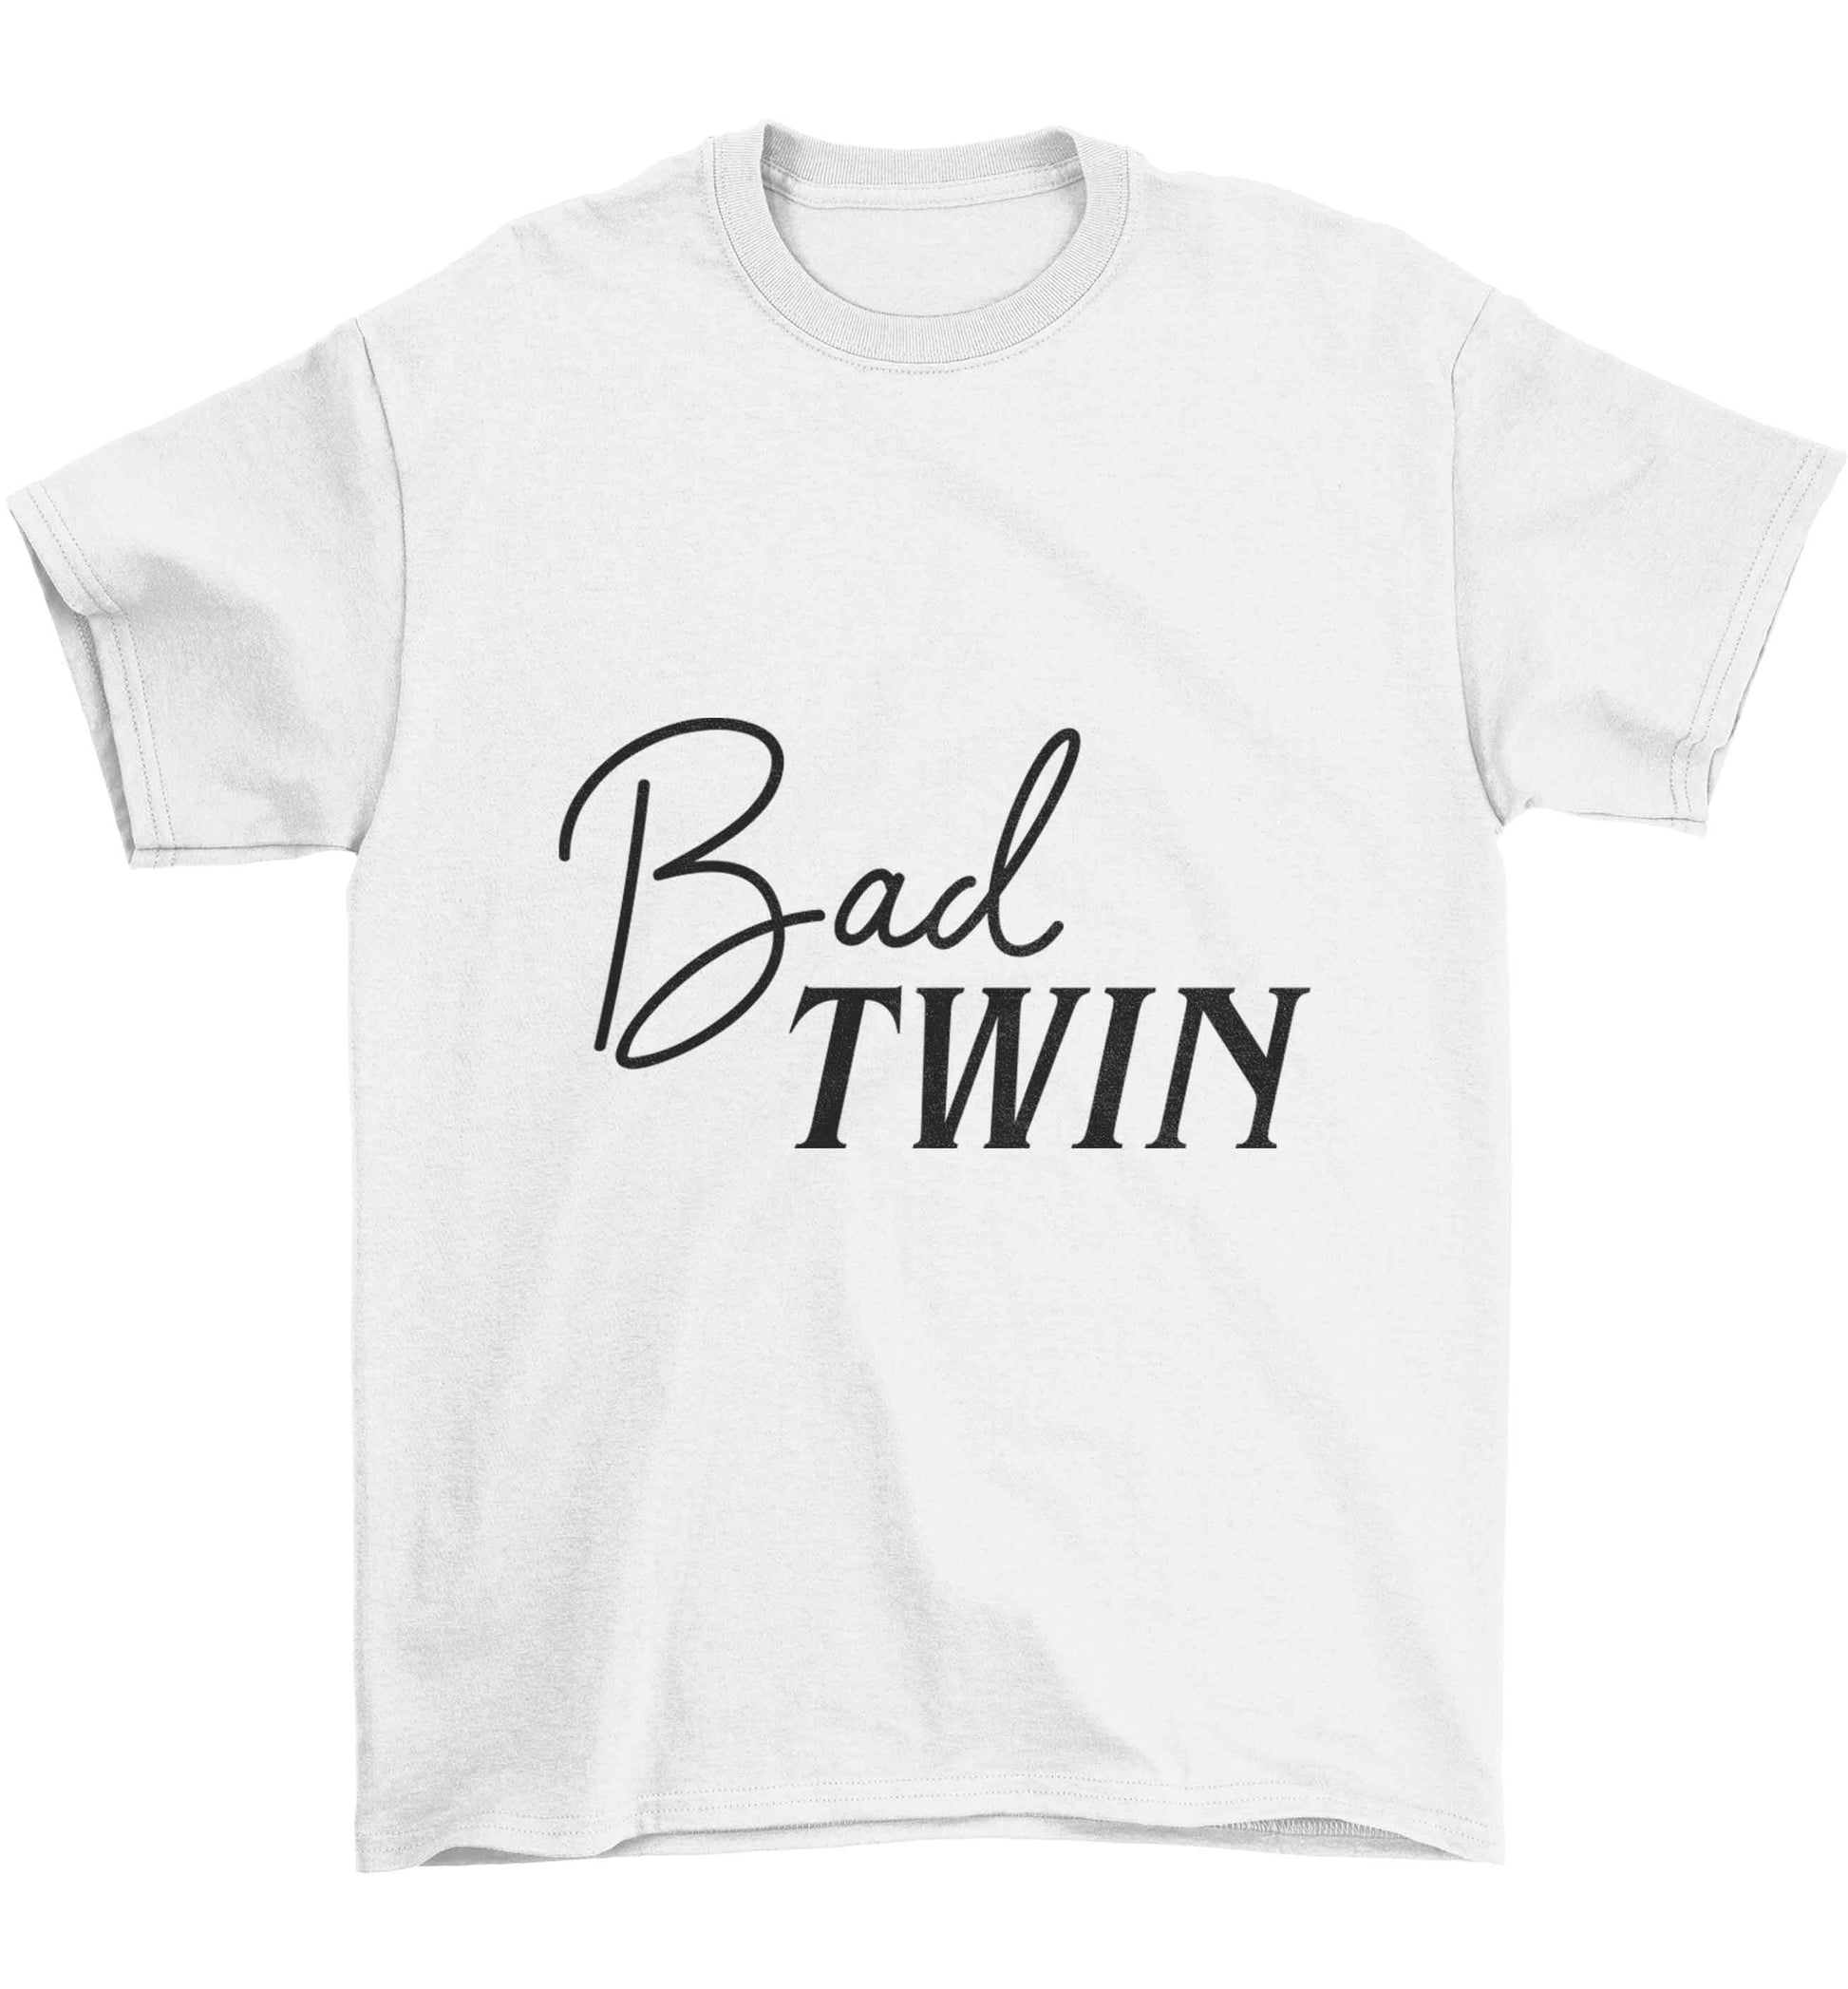 Bad twin Children's white Tshirt 12-13 Years